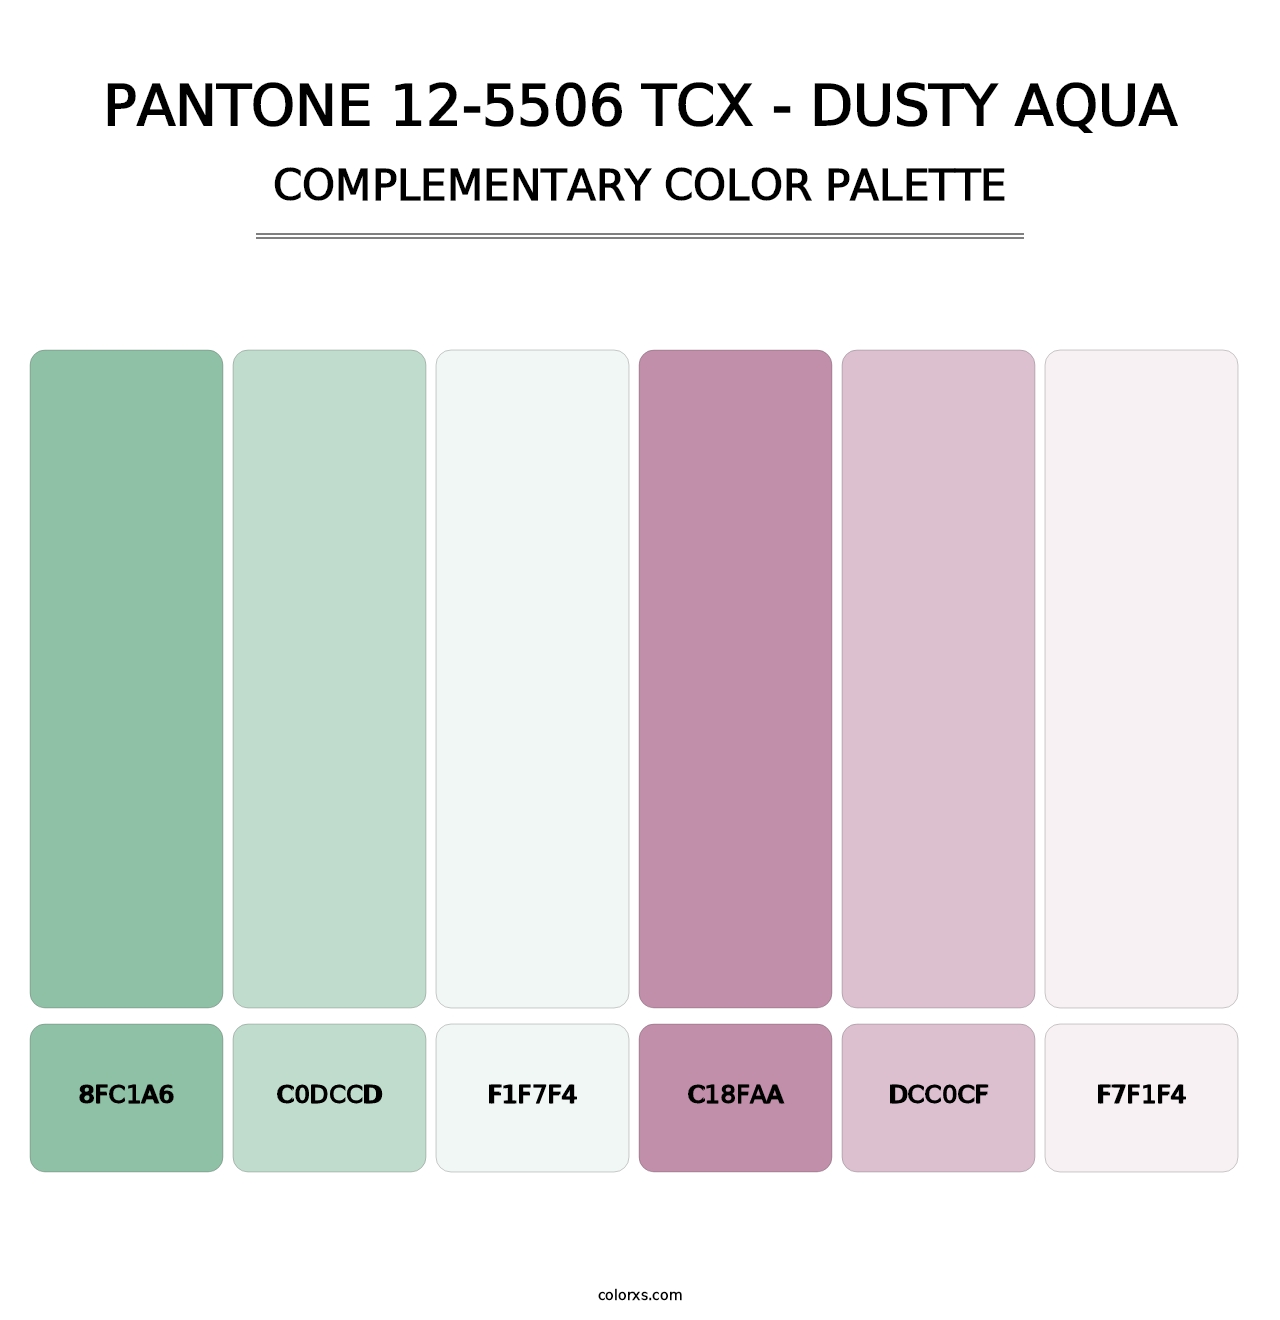 PANTONE 12-5506 TCX - Dusty Aqua - Complementary Color Palette